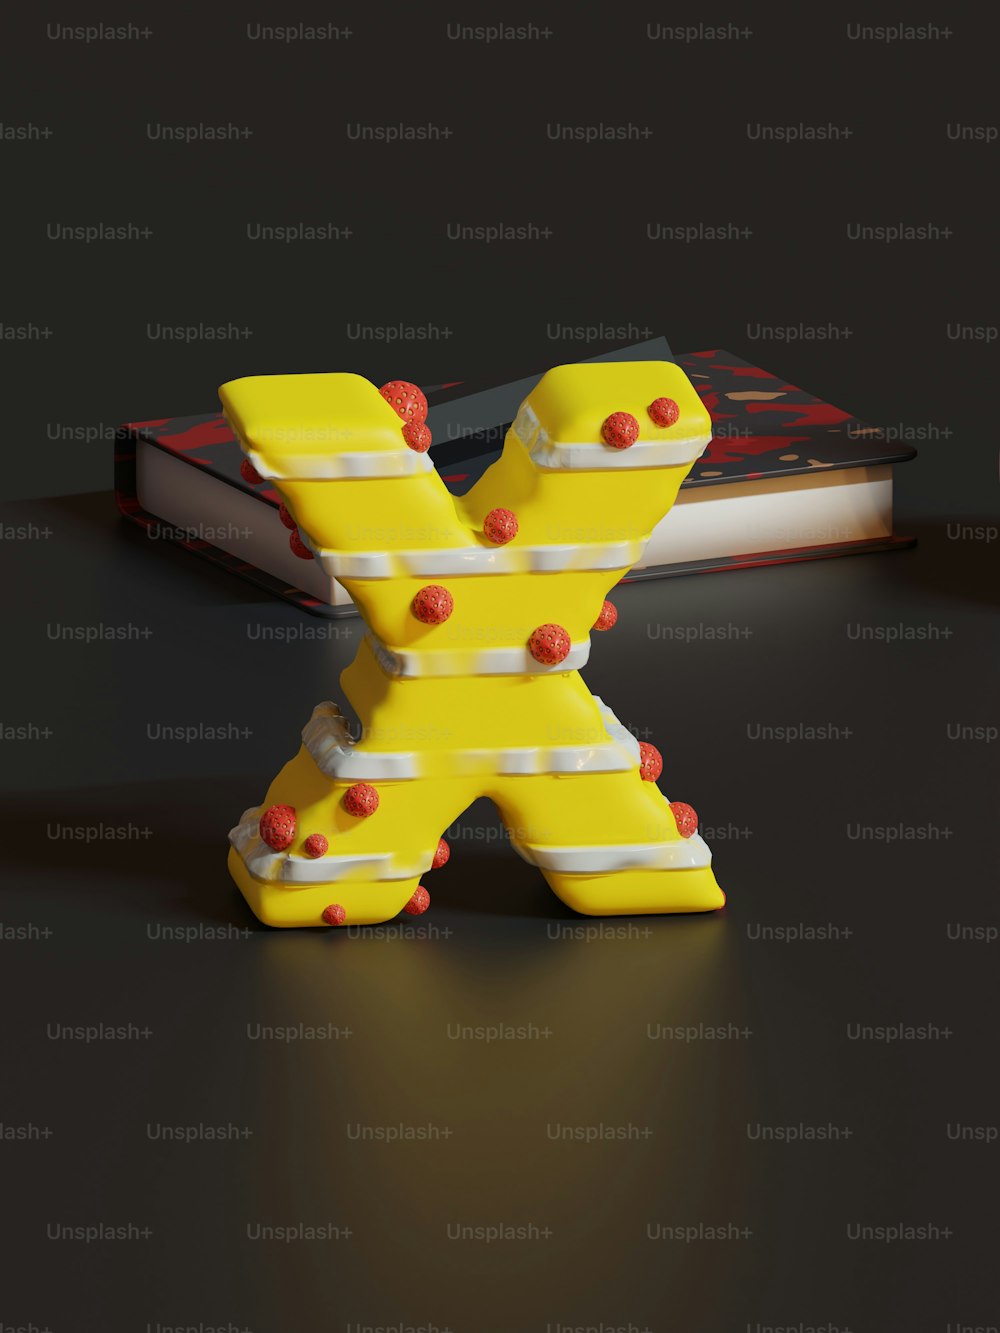 테이블 위에 앉아 있는 노란색 X자 모양의 물체